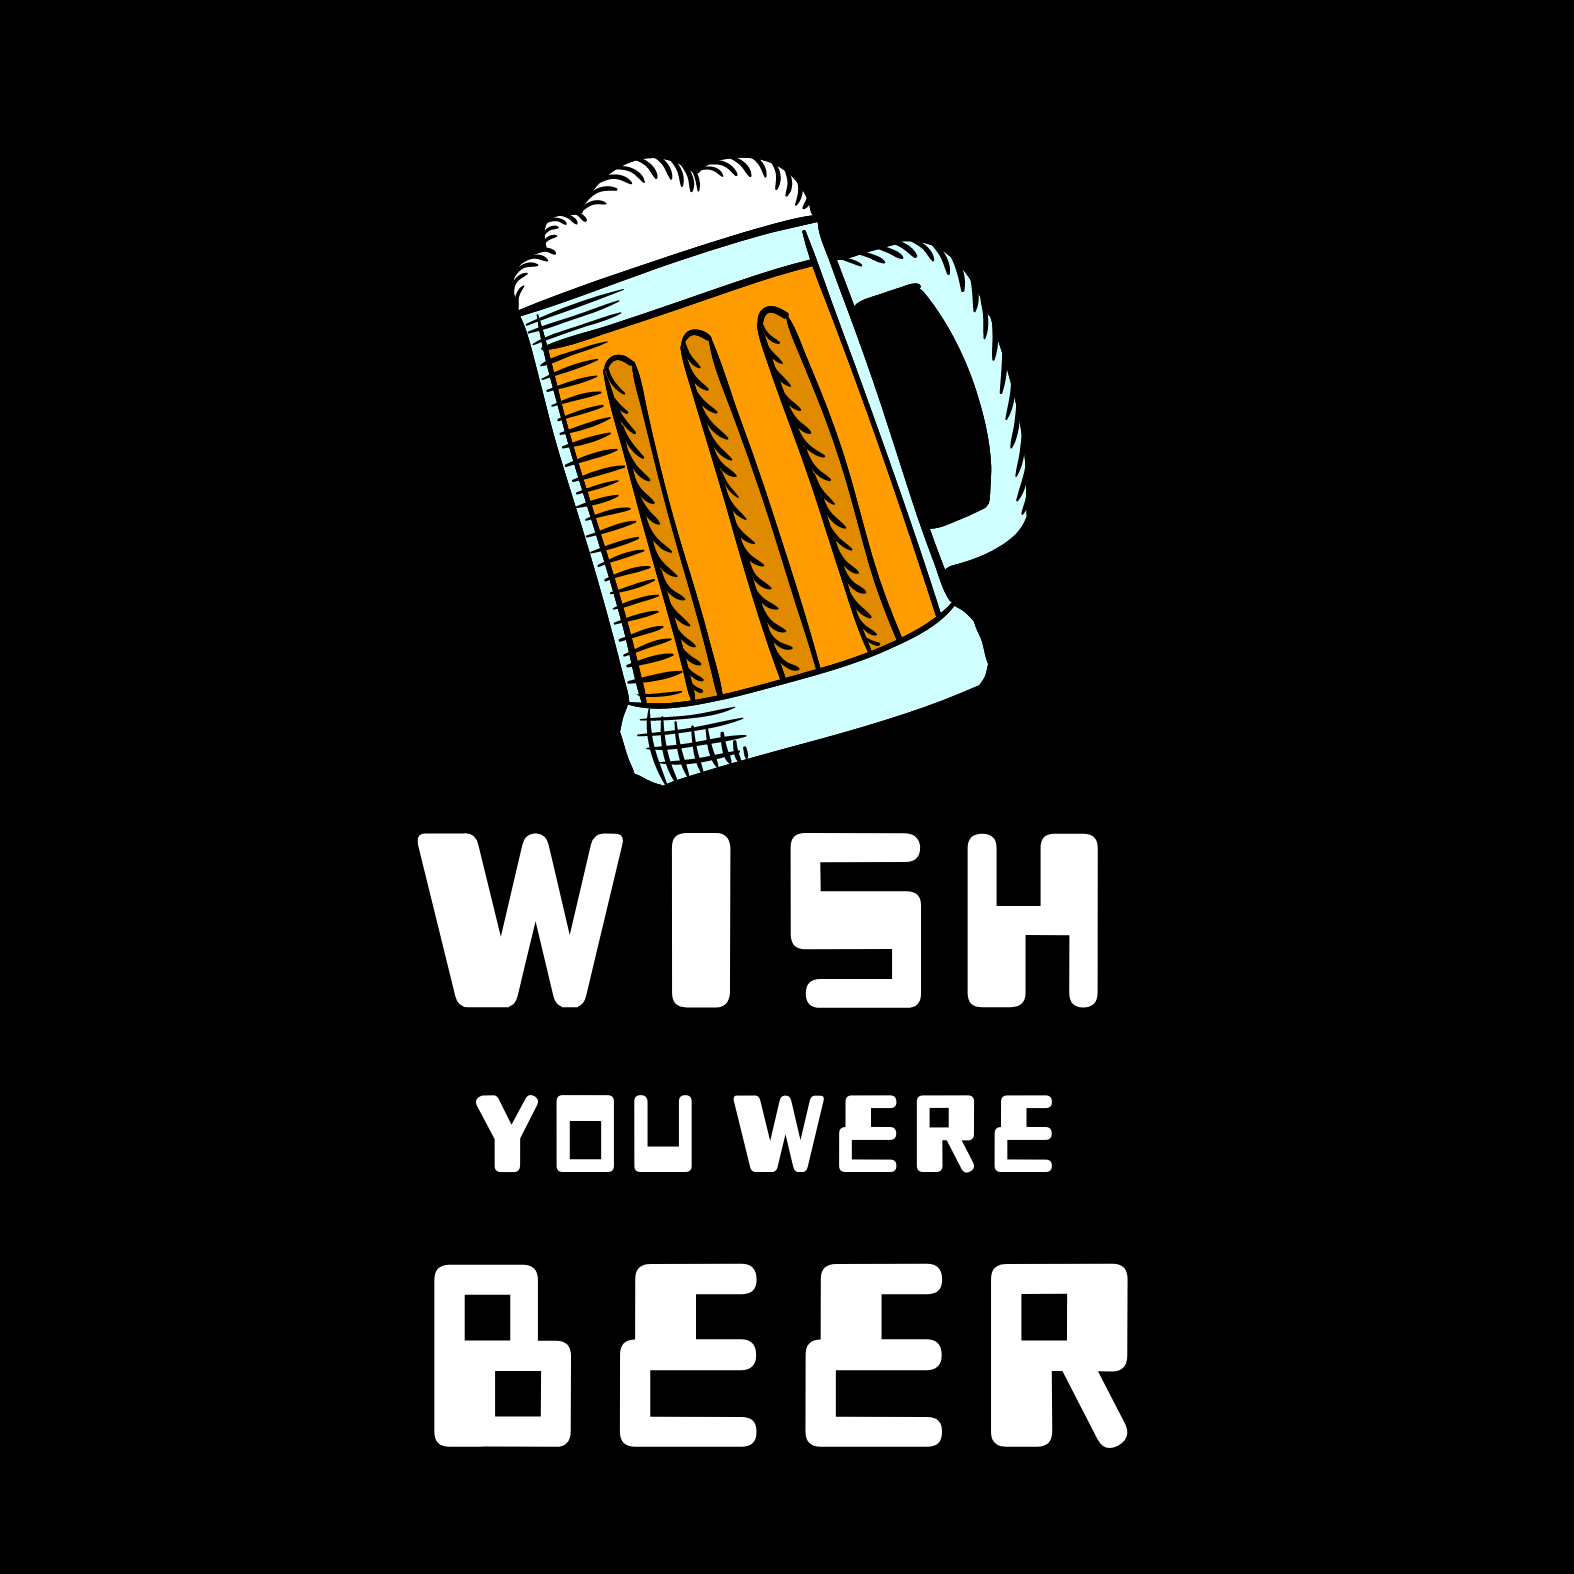 Wish You Were Beer Women's T-shirt - Ken Adams